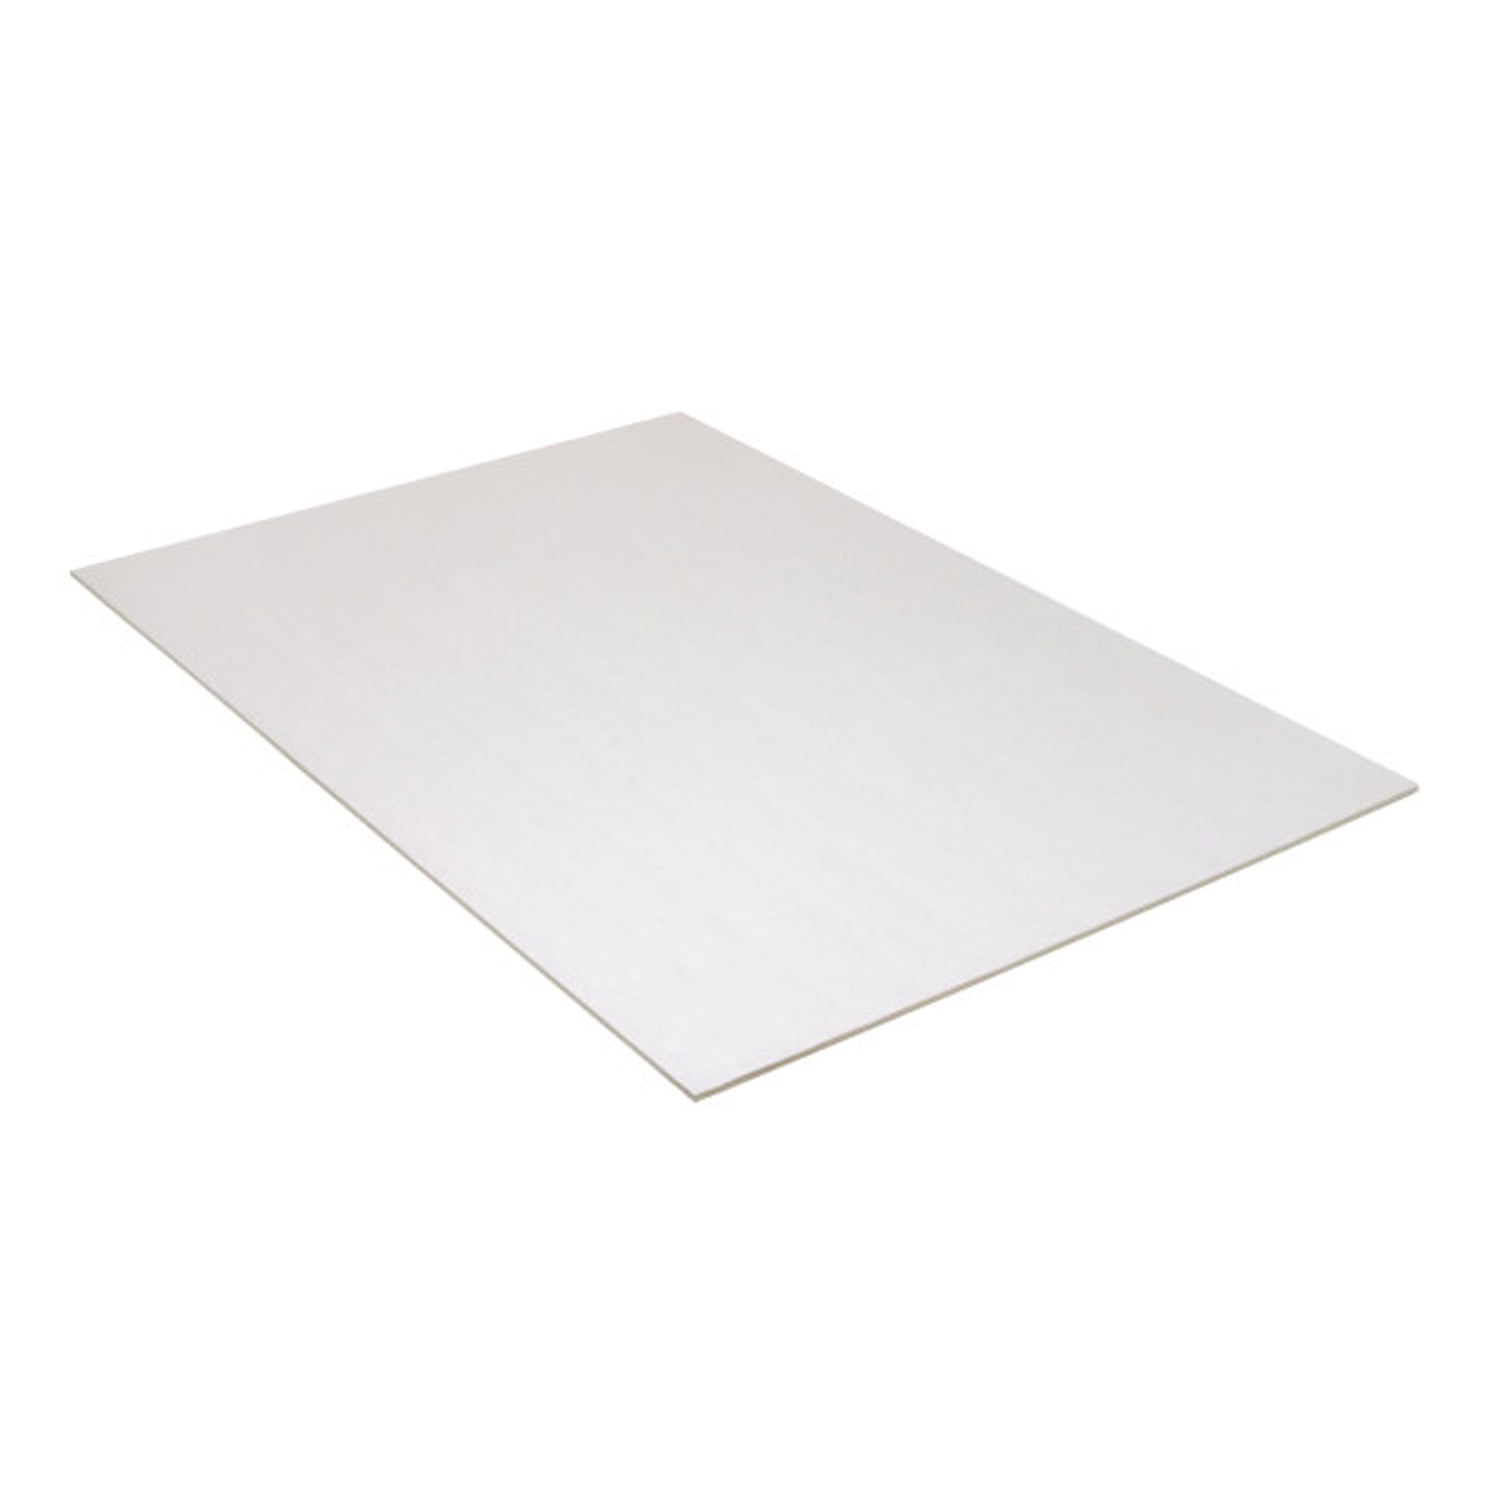 UCreate® Foam Board, White, Matte, 20" x 30", 10 Sheets